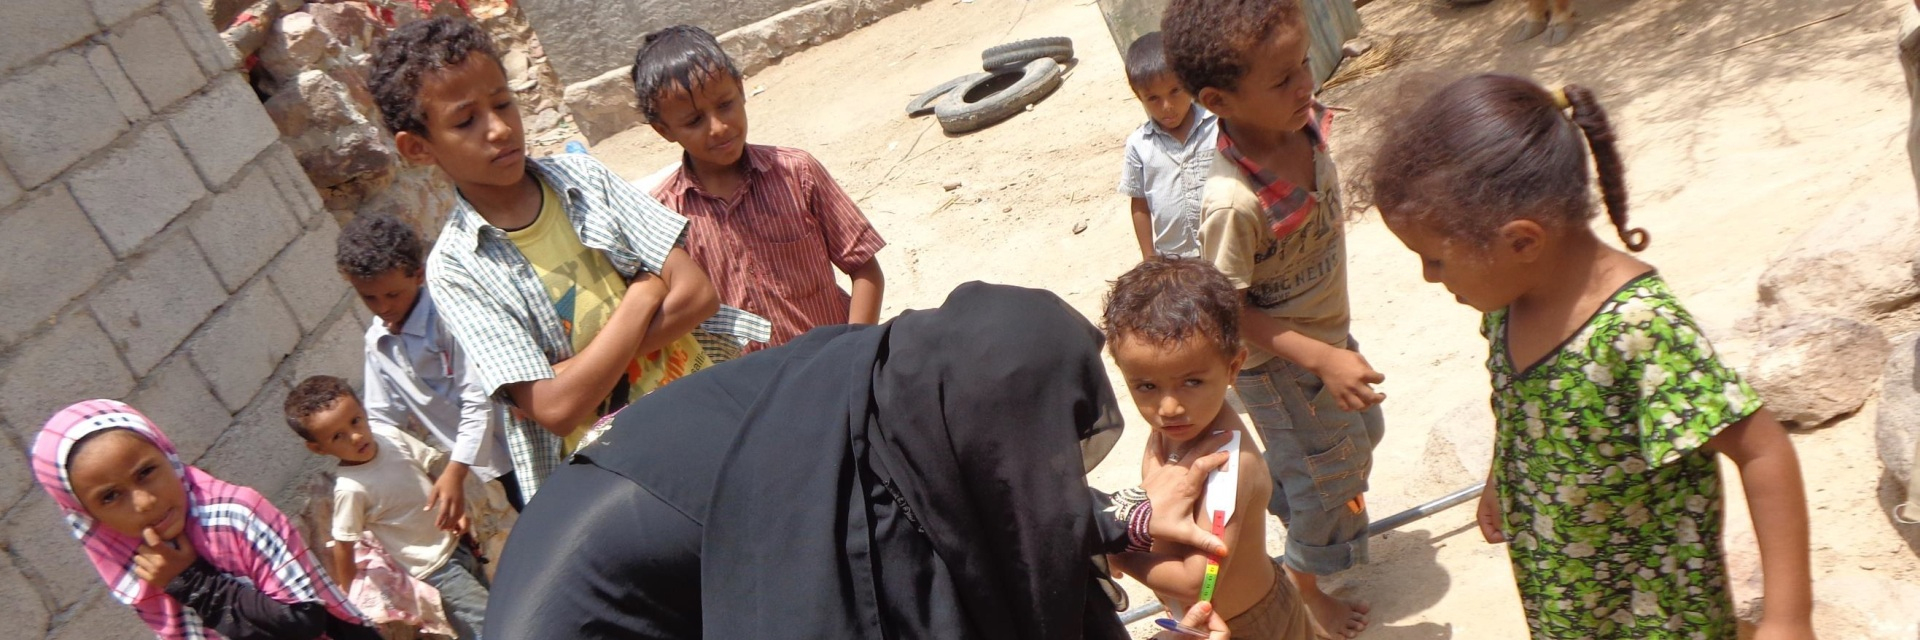 Jemen: Gesundheitsversorgung Und Ernährungssicherung - Drk E.v. über Verhungernde Kinder Bilder